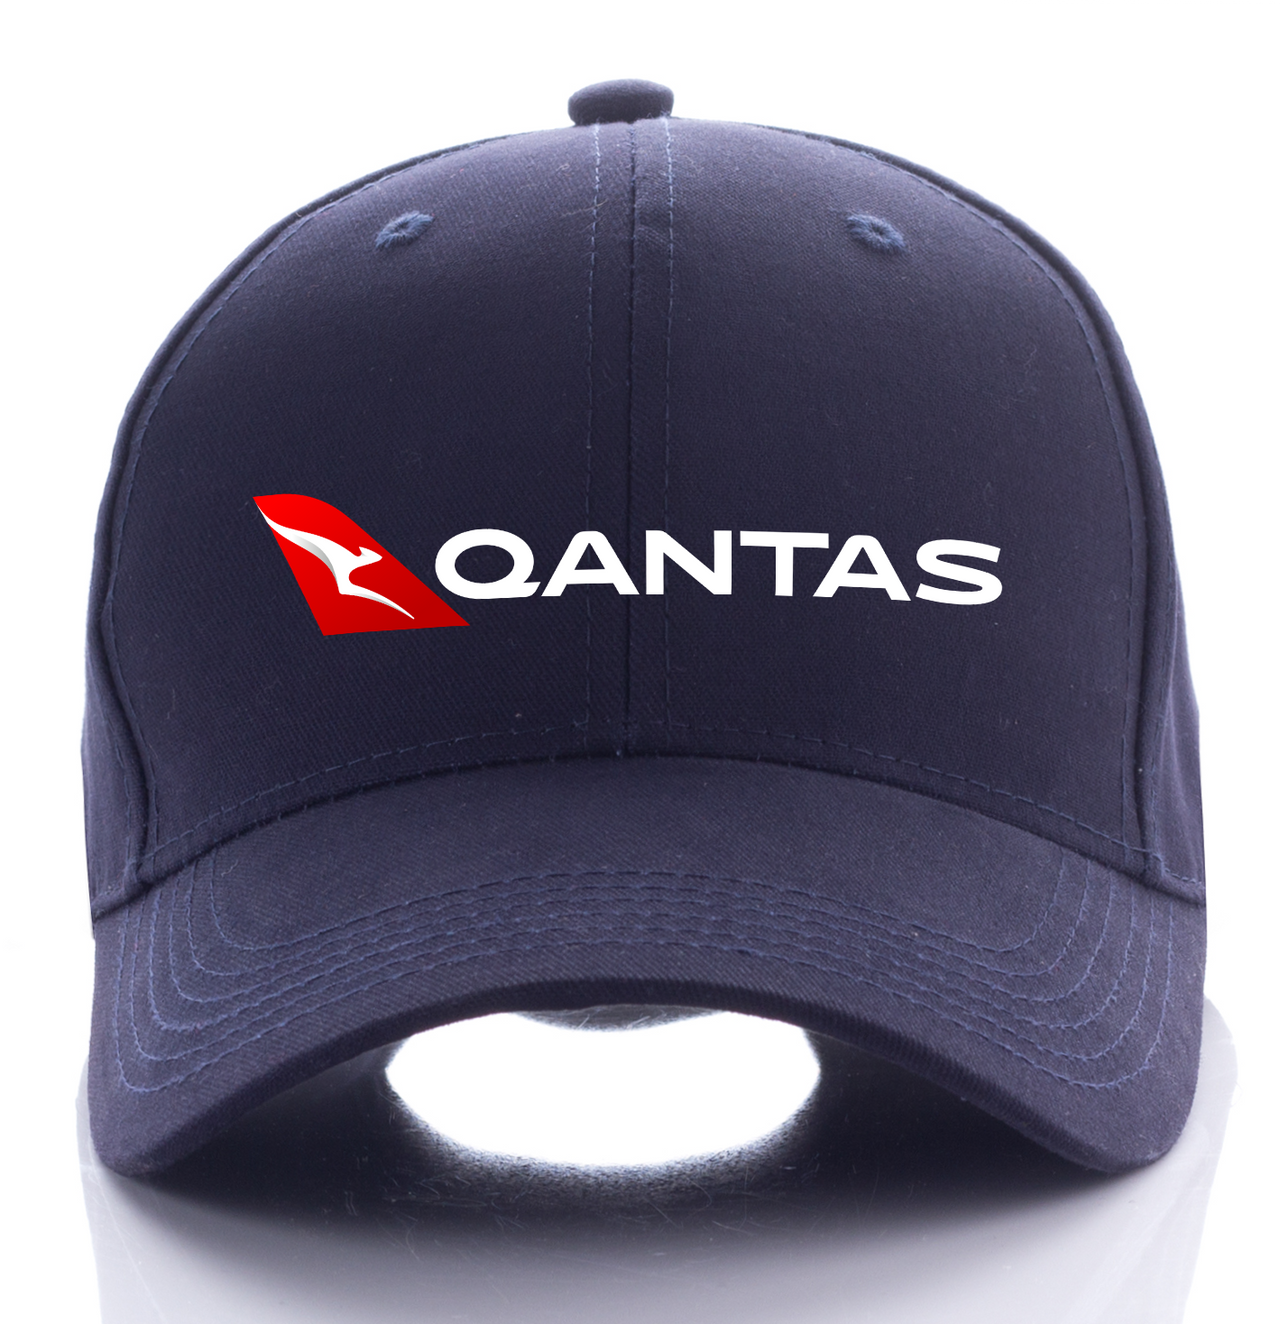 QANTAS AIRLINE DESIGNED CAP